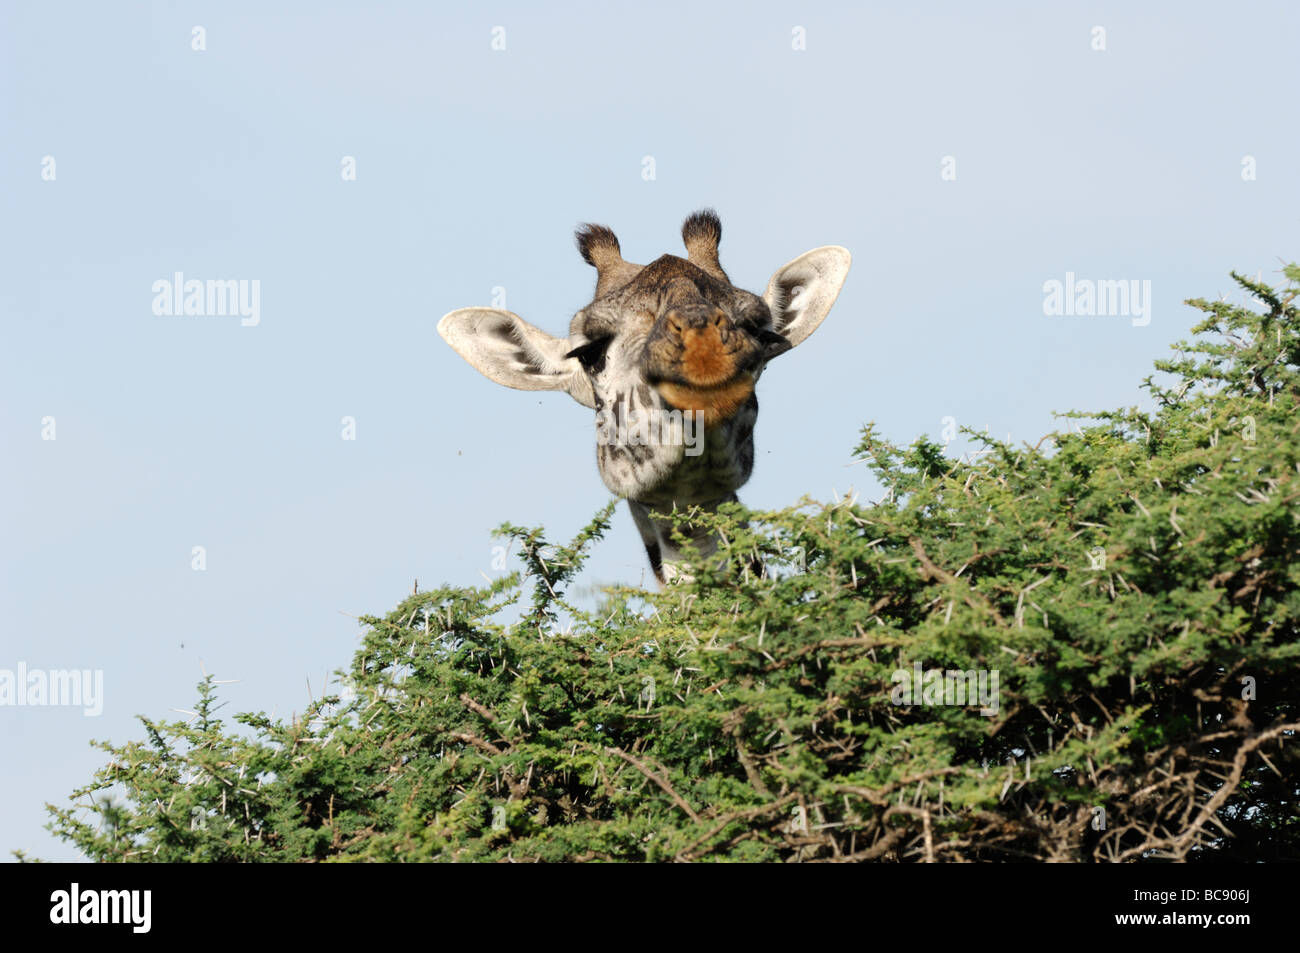 Stock photo of a Masai giraffe eating from the top of an acacia tree, Ndutu, Tanzania, 2009. Stock Photo